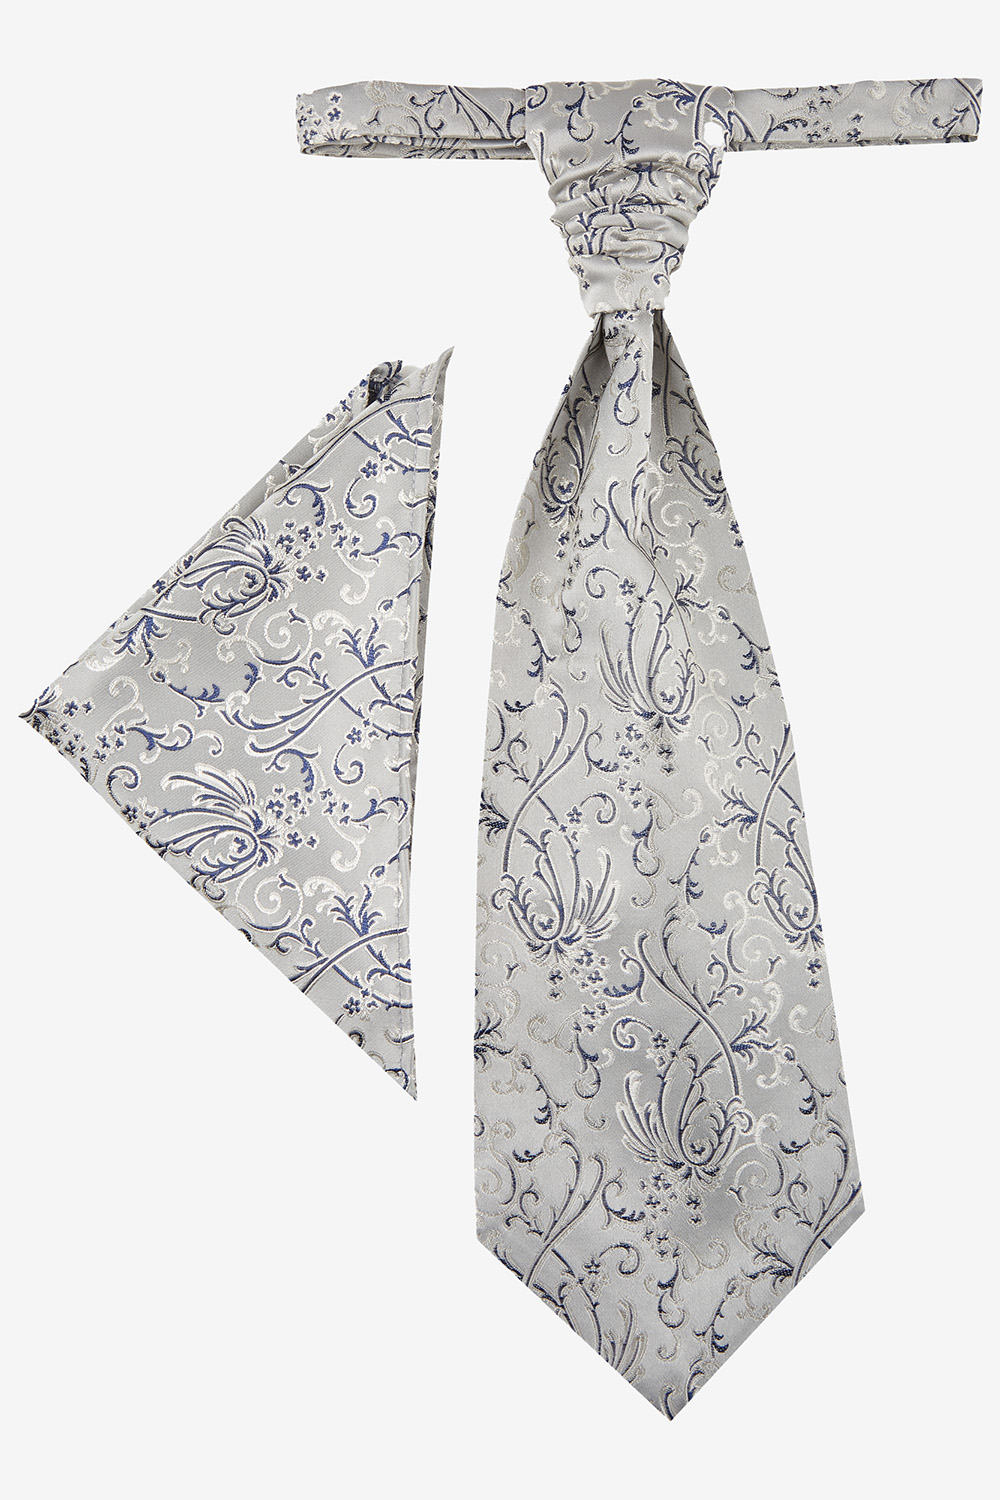 TZIACCO ezüst francia nyakkendő és díszzsebkendő 587100-32